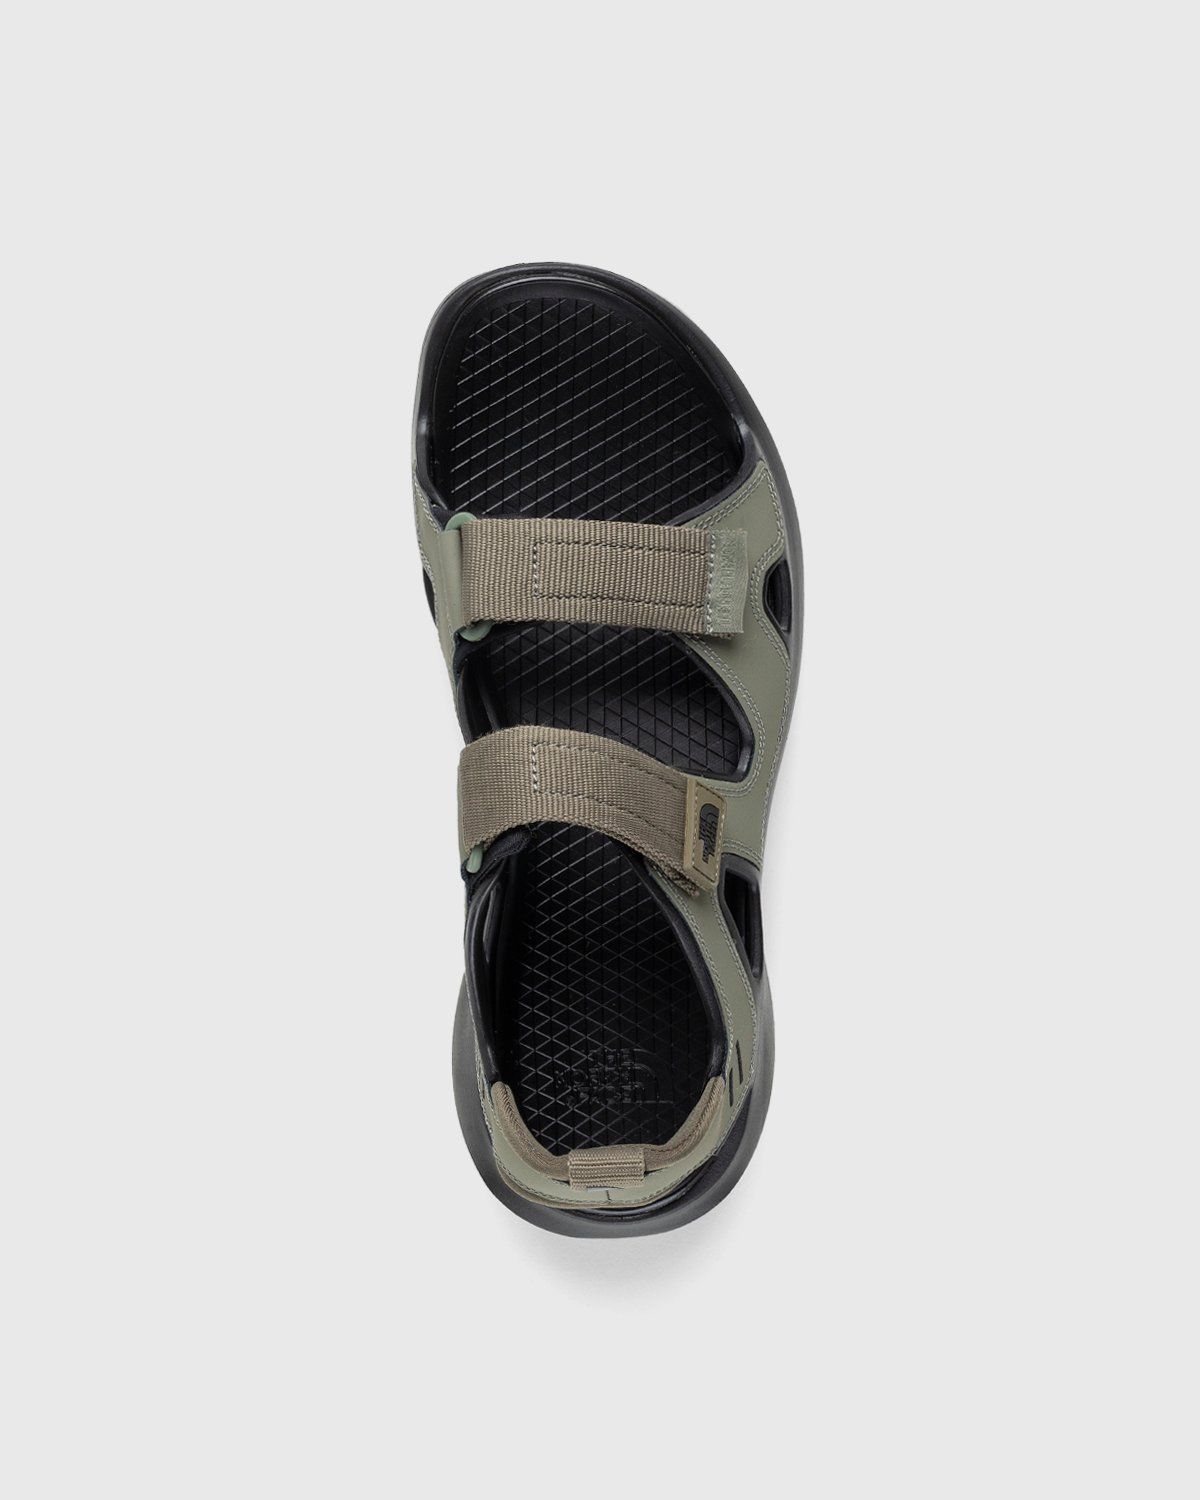 The North Face – Hedgehog Sandal III Burnt Olive Green/Black - Sandals - Green - Image 3